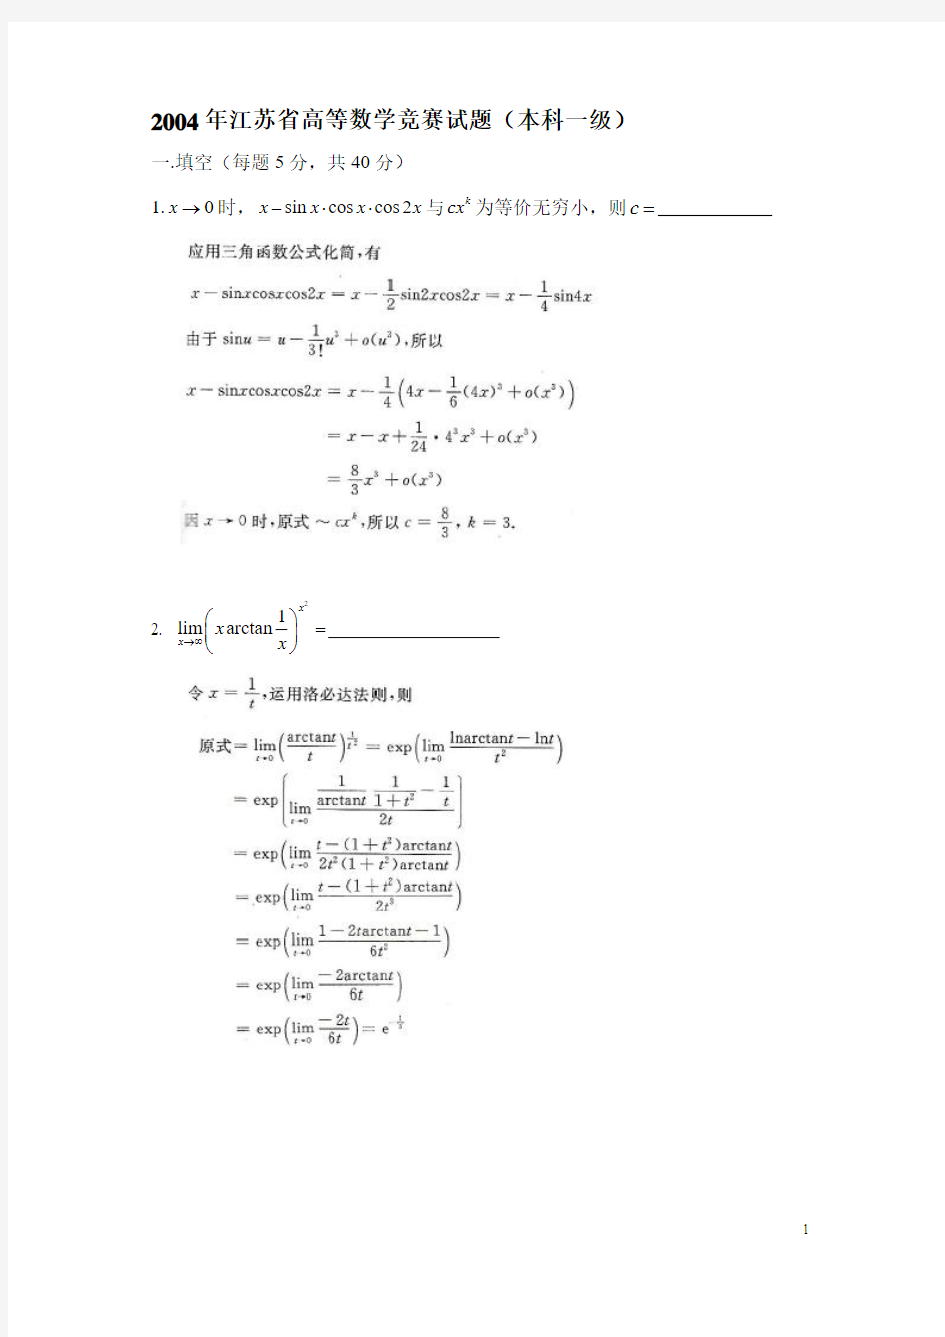 2004江苏省高校第7届高等数学赛试题答案